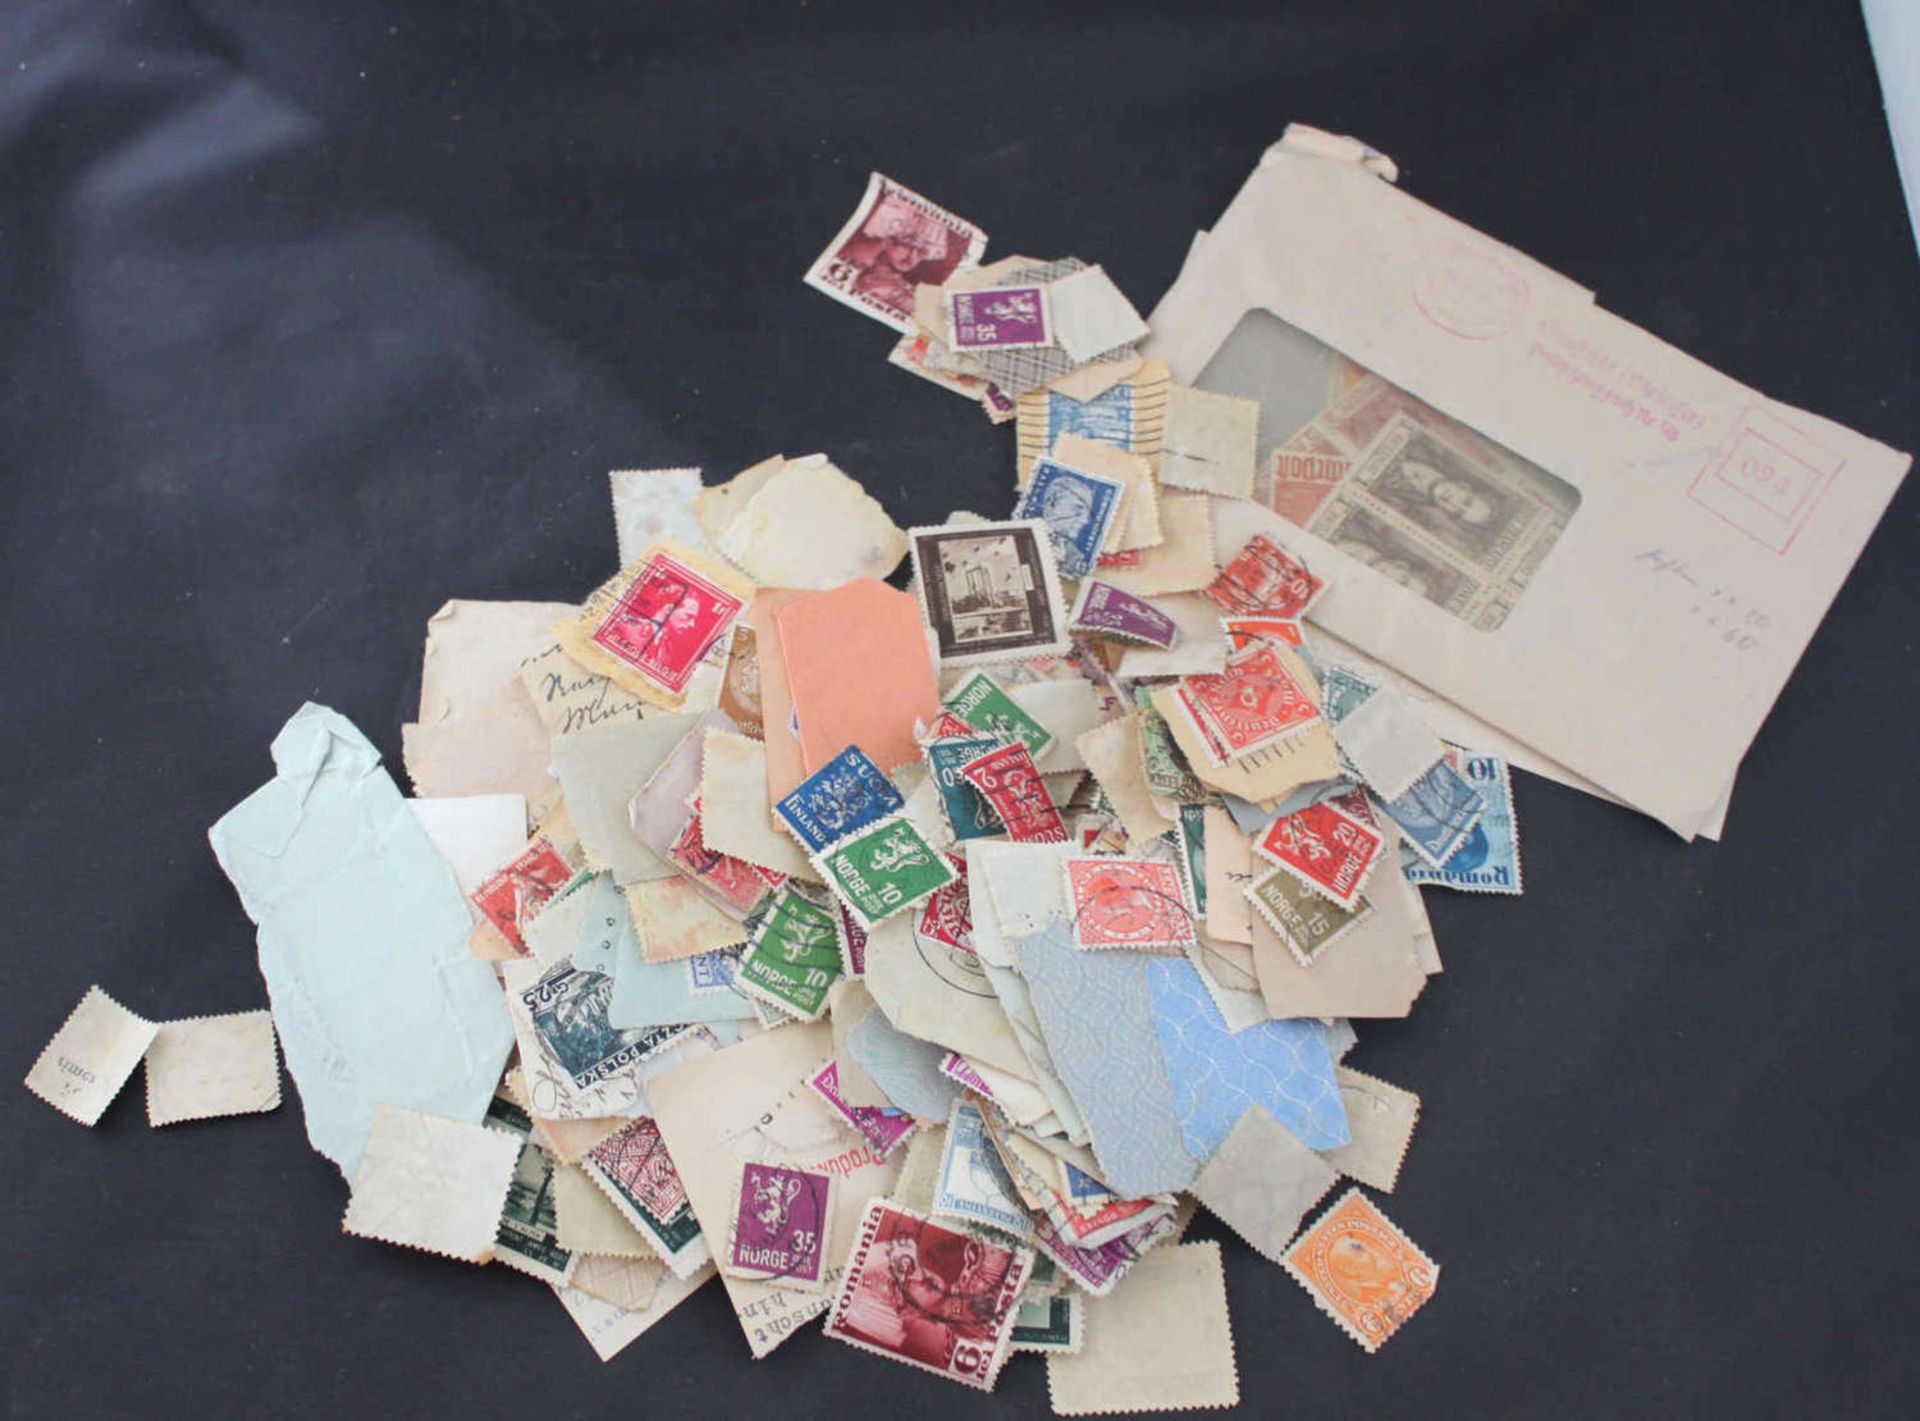 1 Restelot Briefmarken, Besichtigung empfohlen